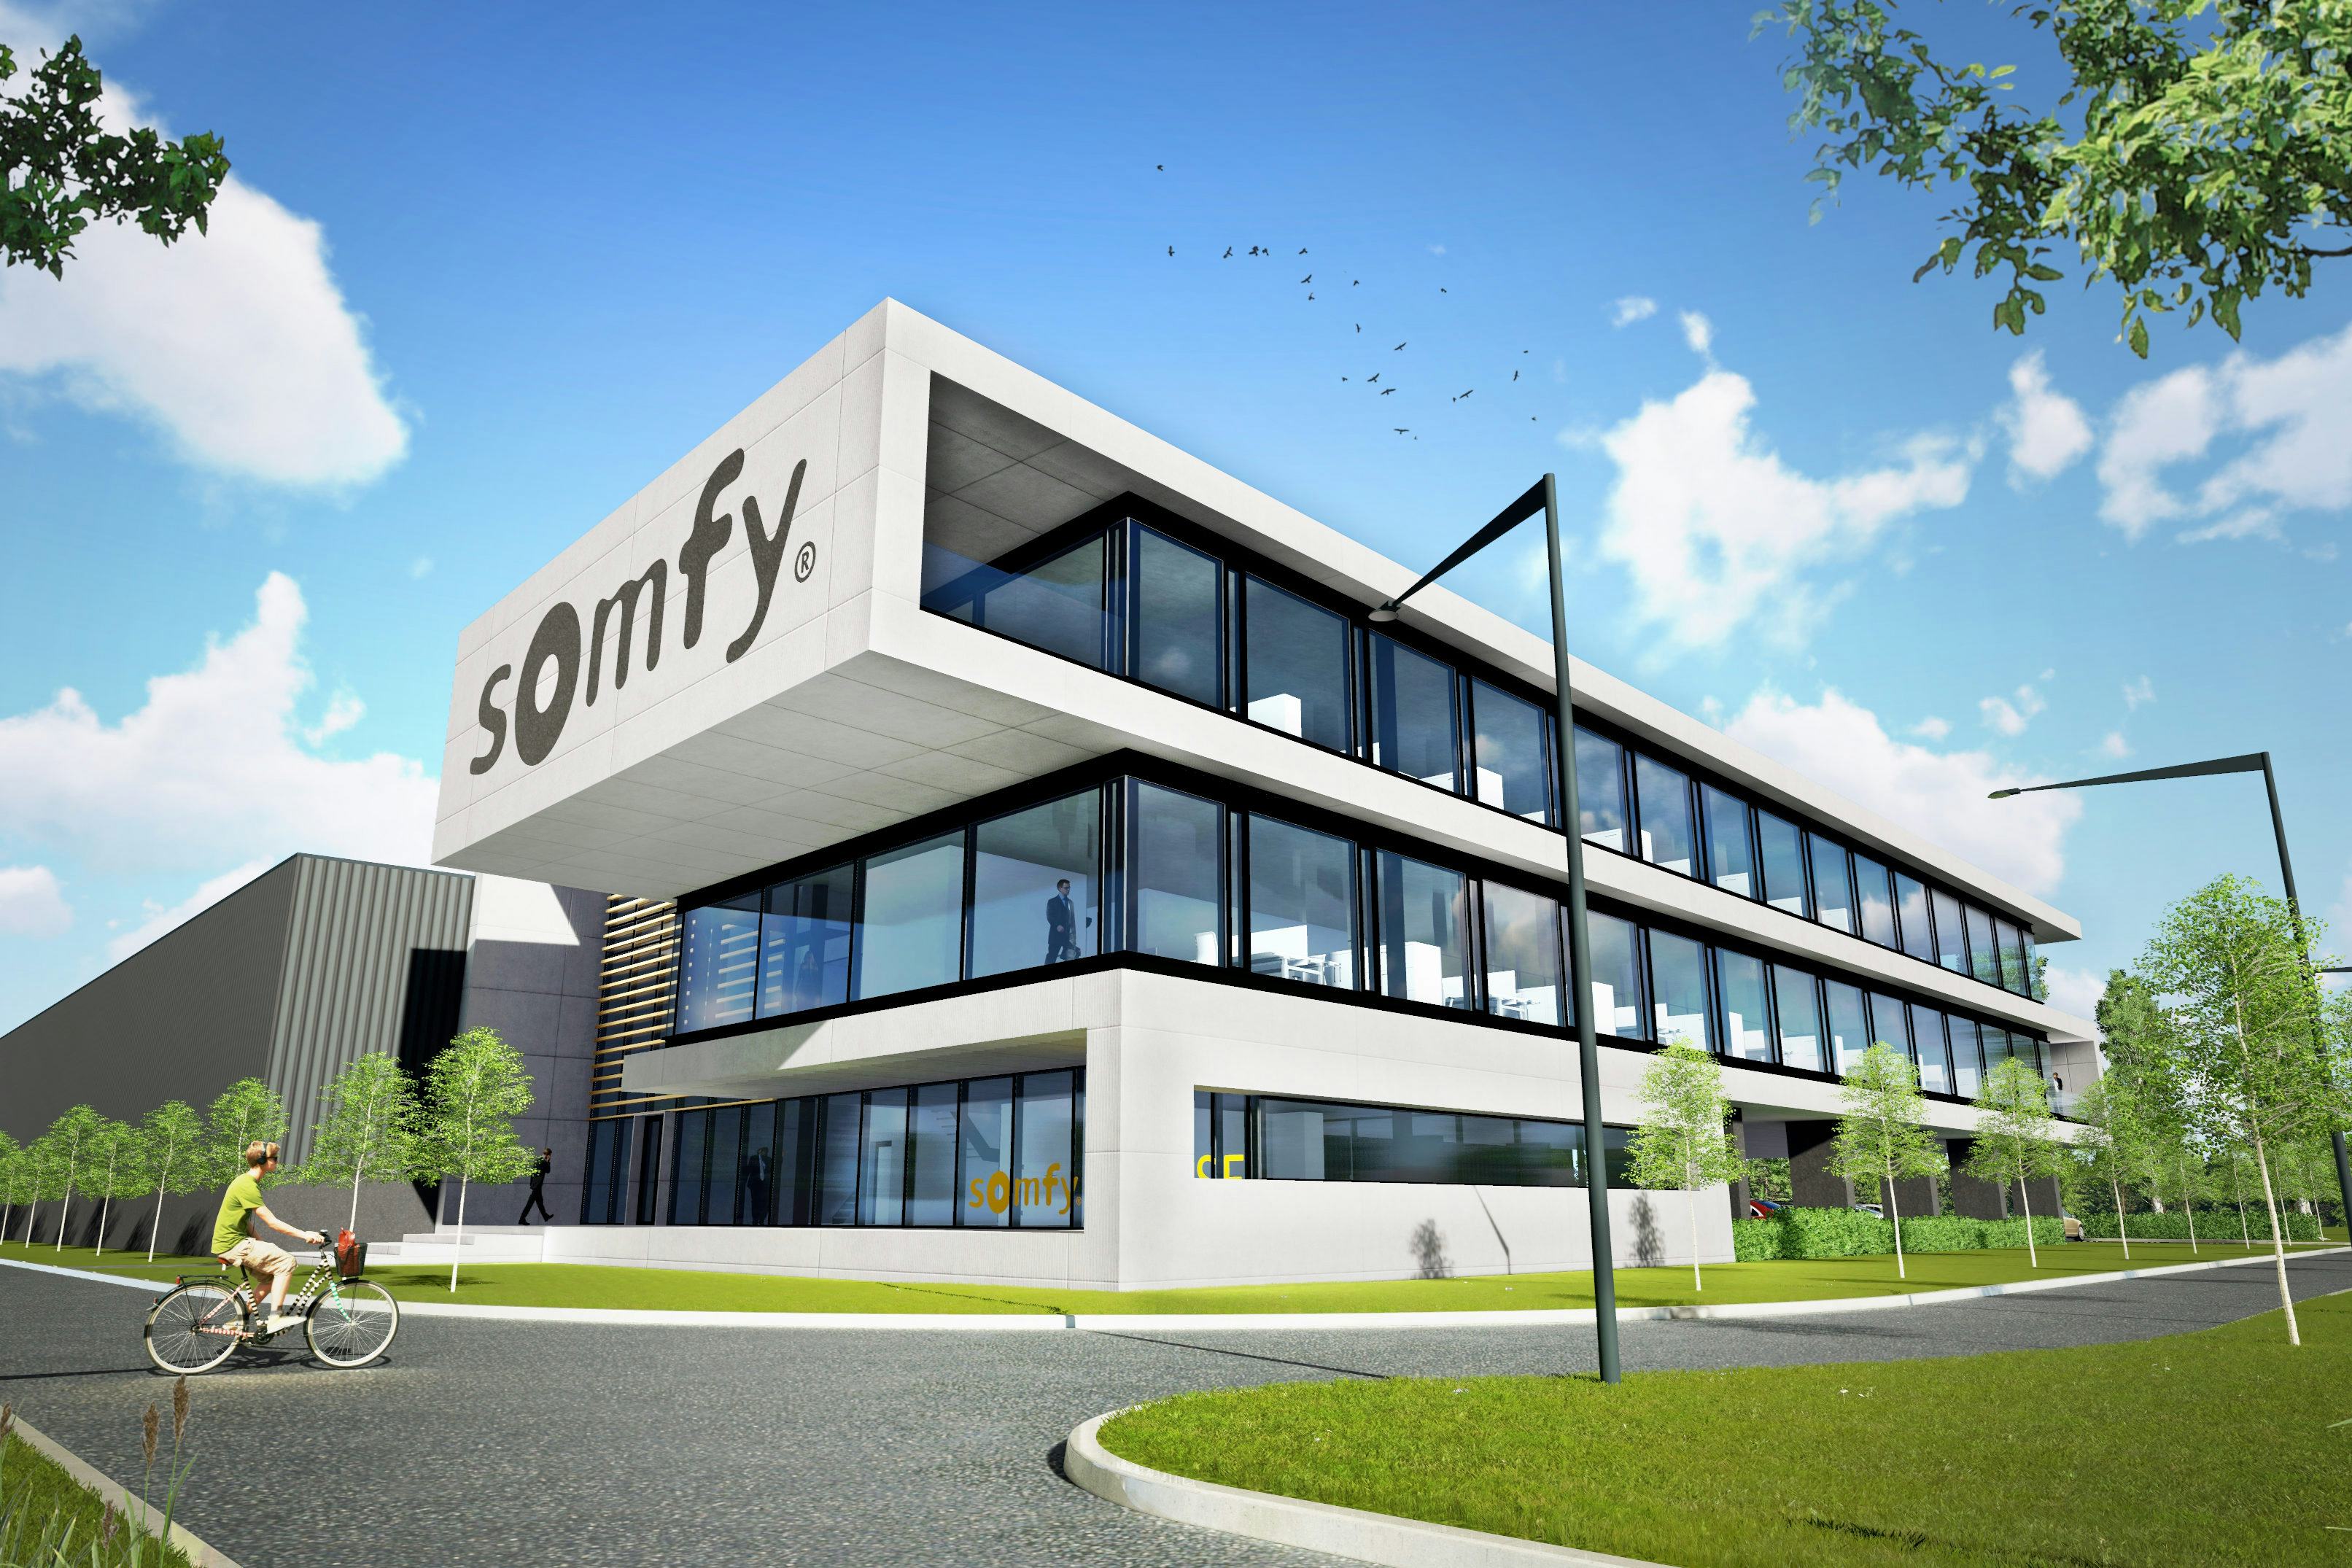 Somfy Nederland verhuist naar De President in Hoofddorp